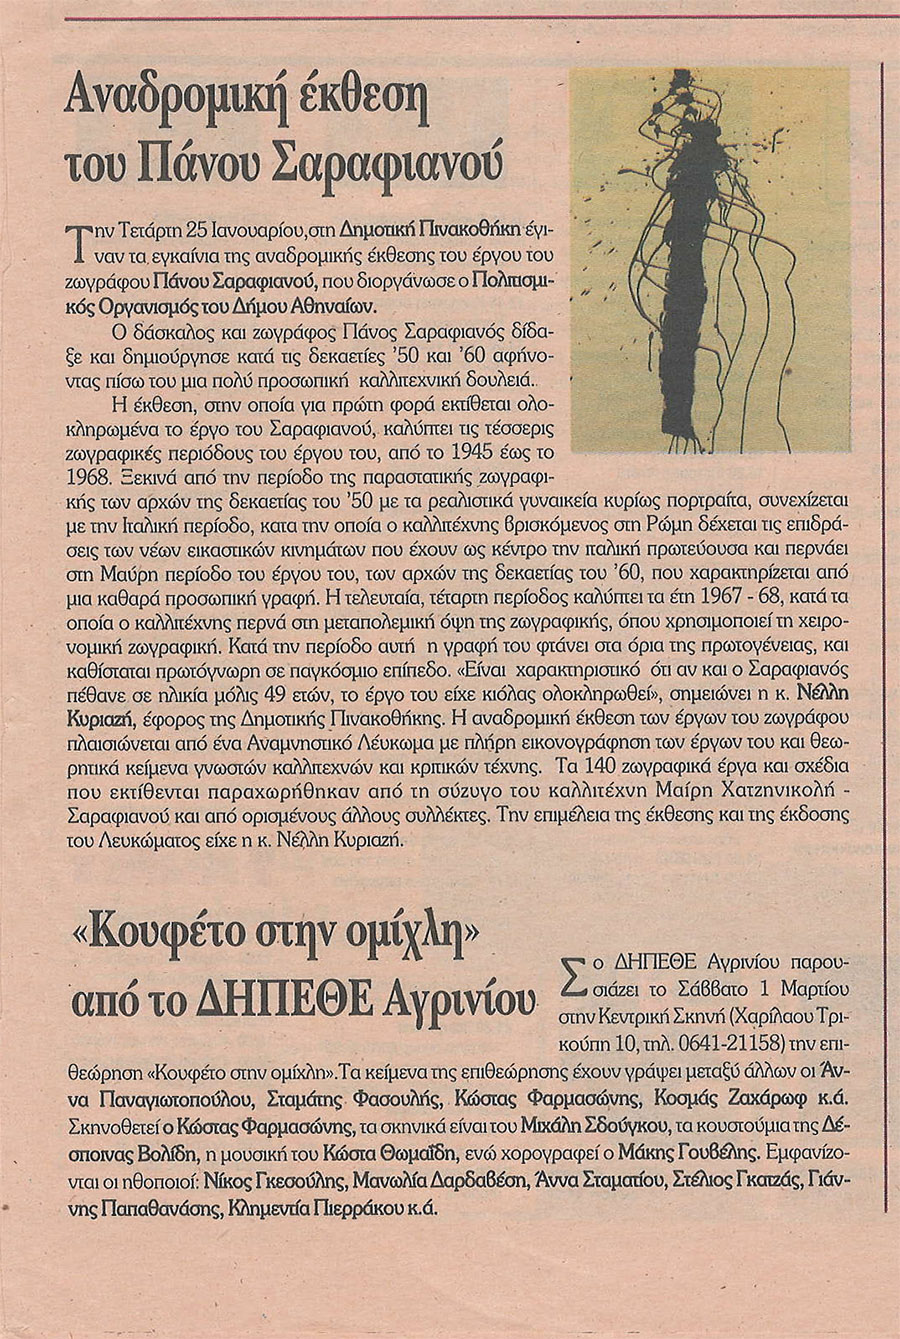 Ependitis 2-3-1997